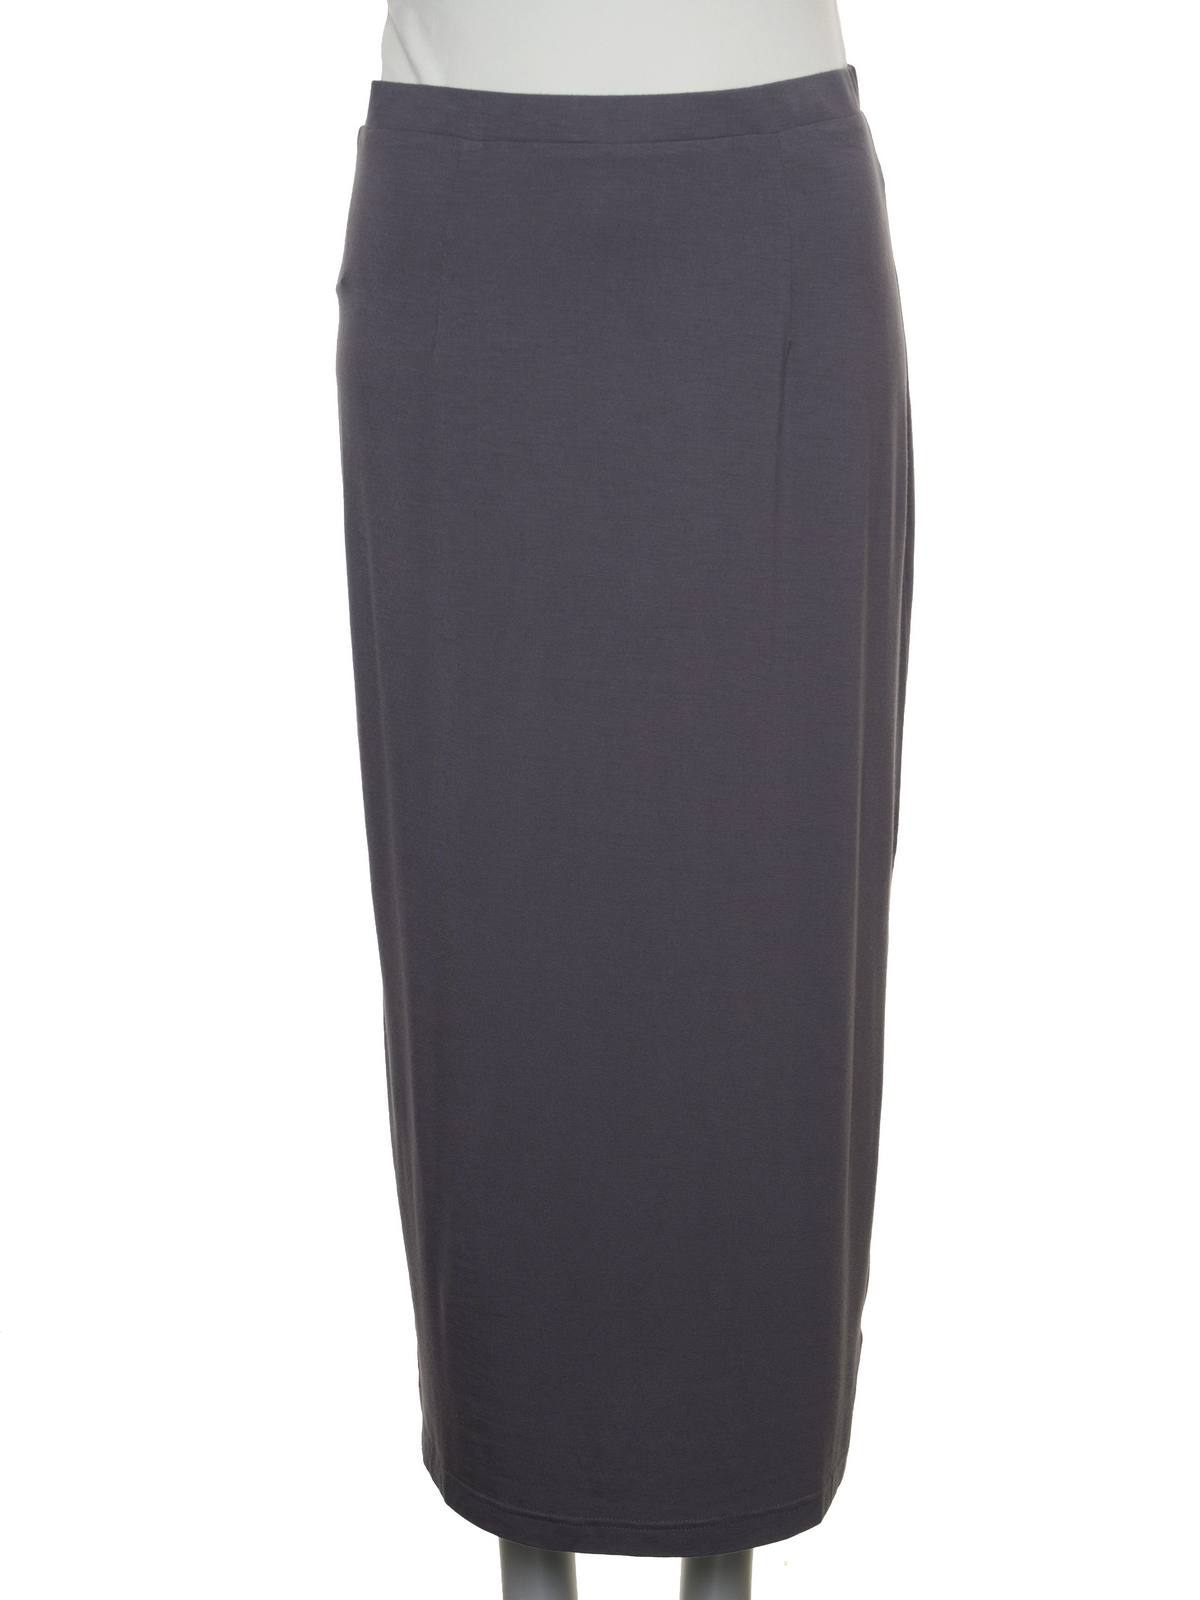 Capri Clothing SLV5020 Skirt, Grey